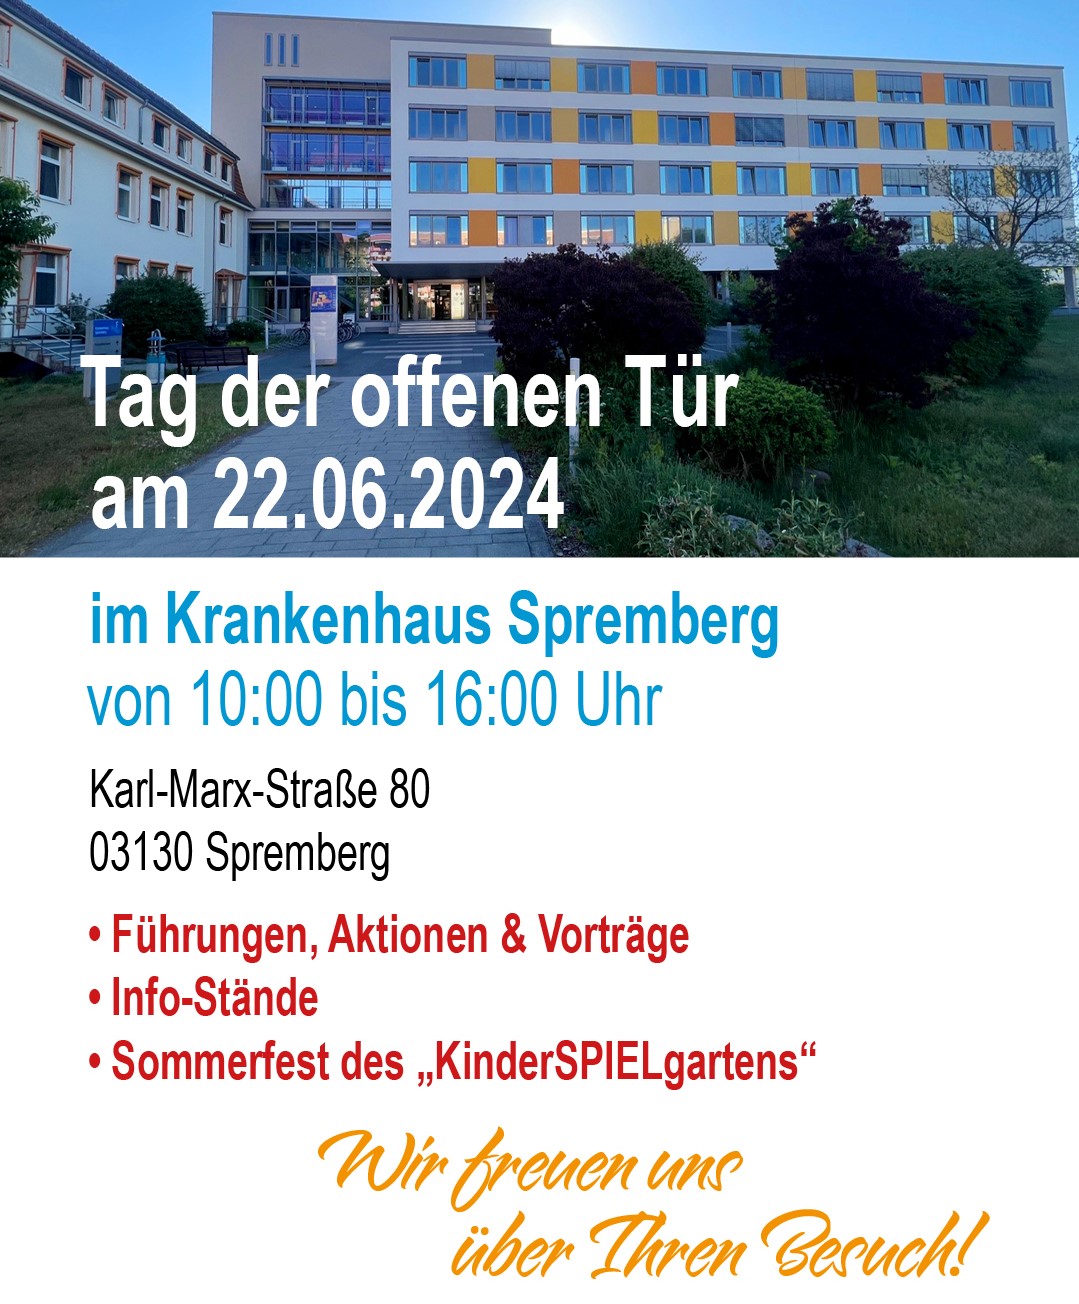 Krankenhaus Spremberg - Notfallambulanz & Chirurgie